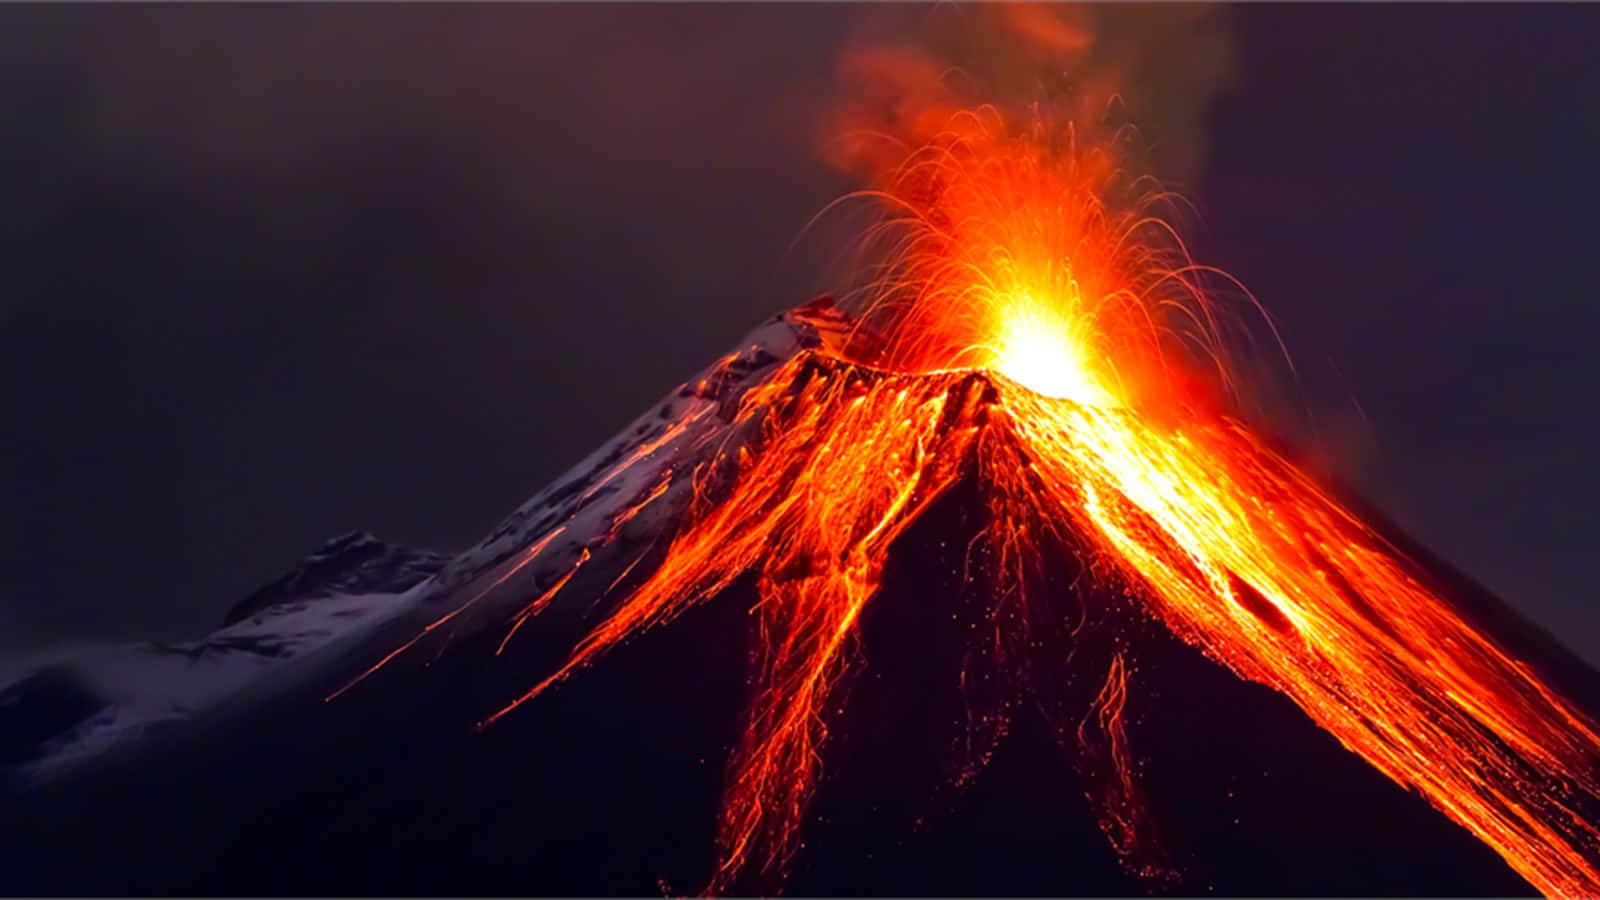 Dampfsteigt Auf, Während Geschmolzene Lava Aus Dem Aktiven Vulkan Ausbricht.